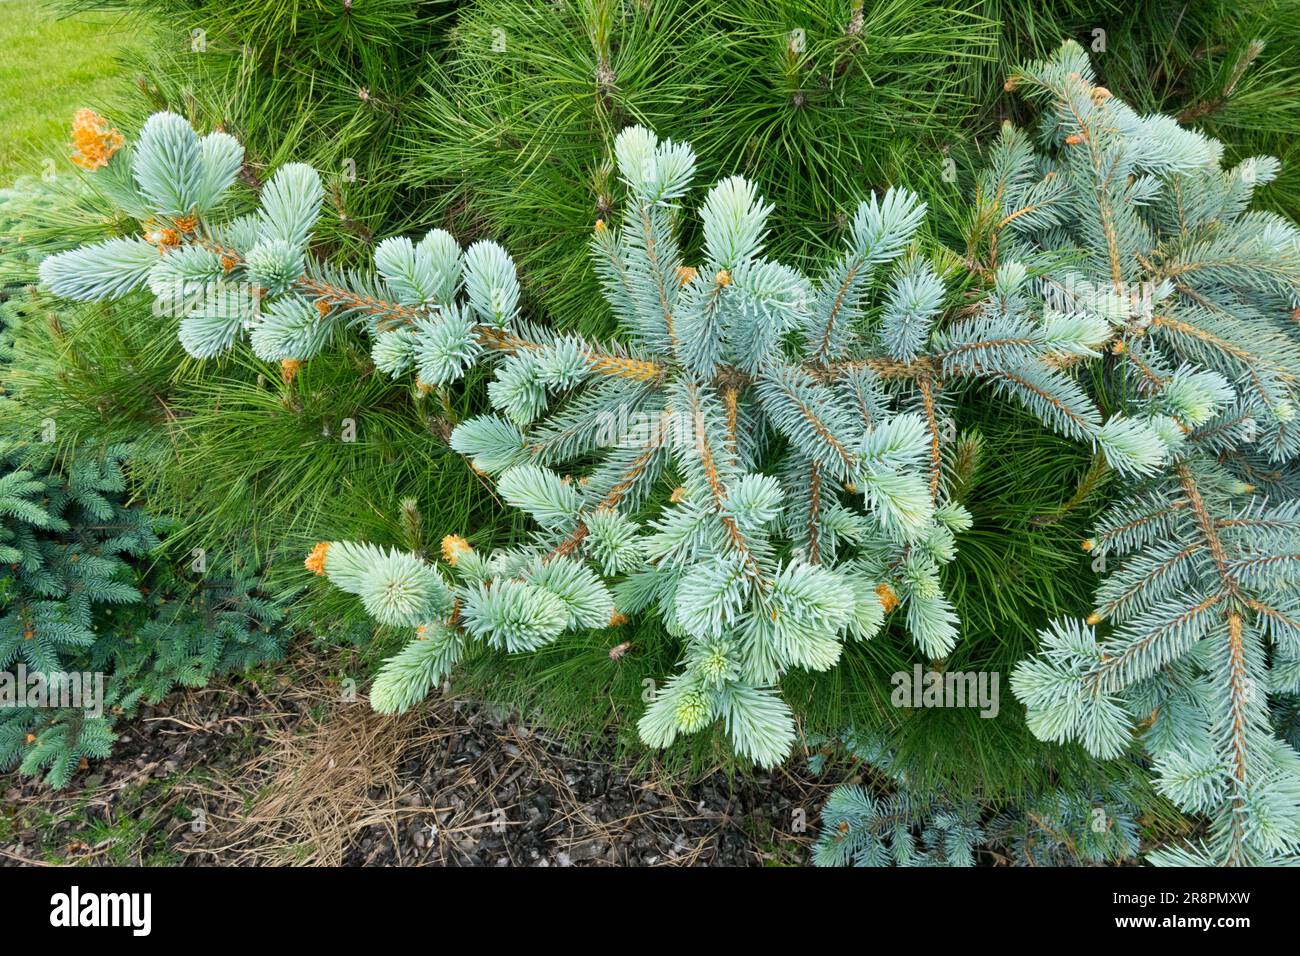 Épinette prostrée argentée Picea pungens 'procumbens glauca' Picea pungens Colorado Blue Spruce Tree printemps argenté couleur fond Pinus nigra 'Nana' Banque D'Images